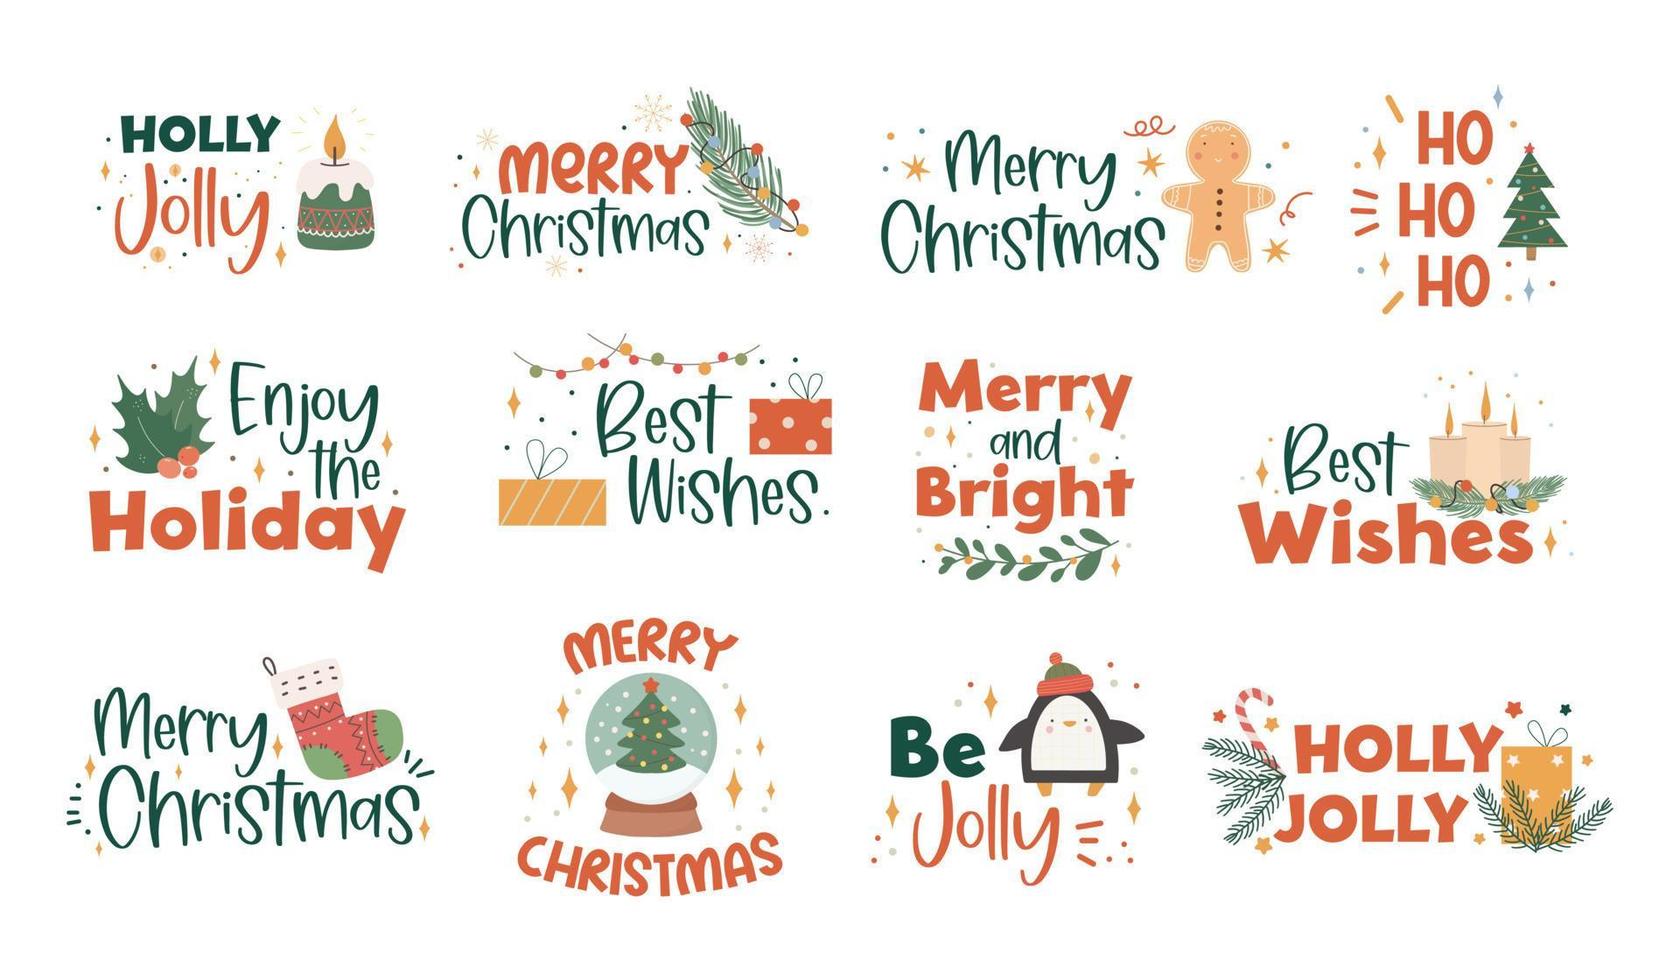 collezione di lettere natalizie scritte a mano con decorazioni natalizie disegnate a mano - foglie di agrifoglio, ghirlande leggere, candele, calze lavorate a maglia e regali. frasi colorate festive. vettore